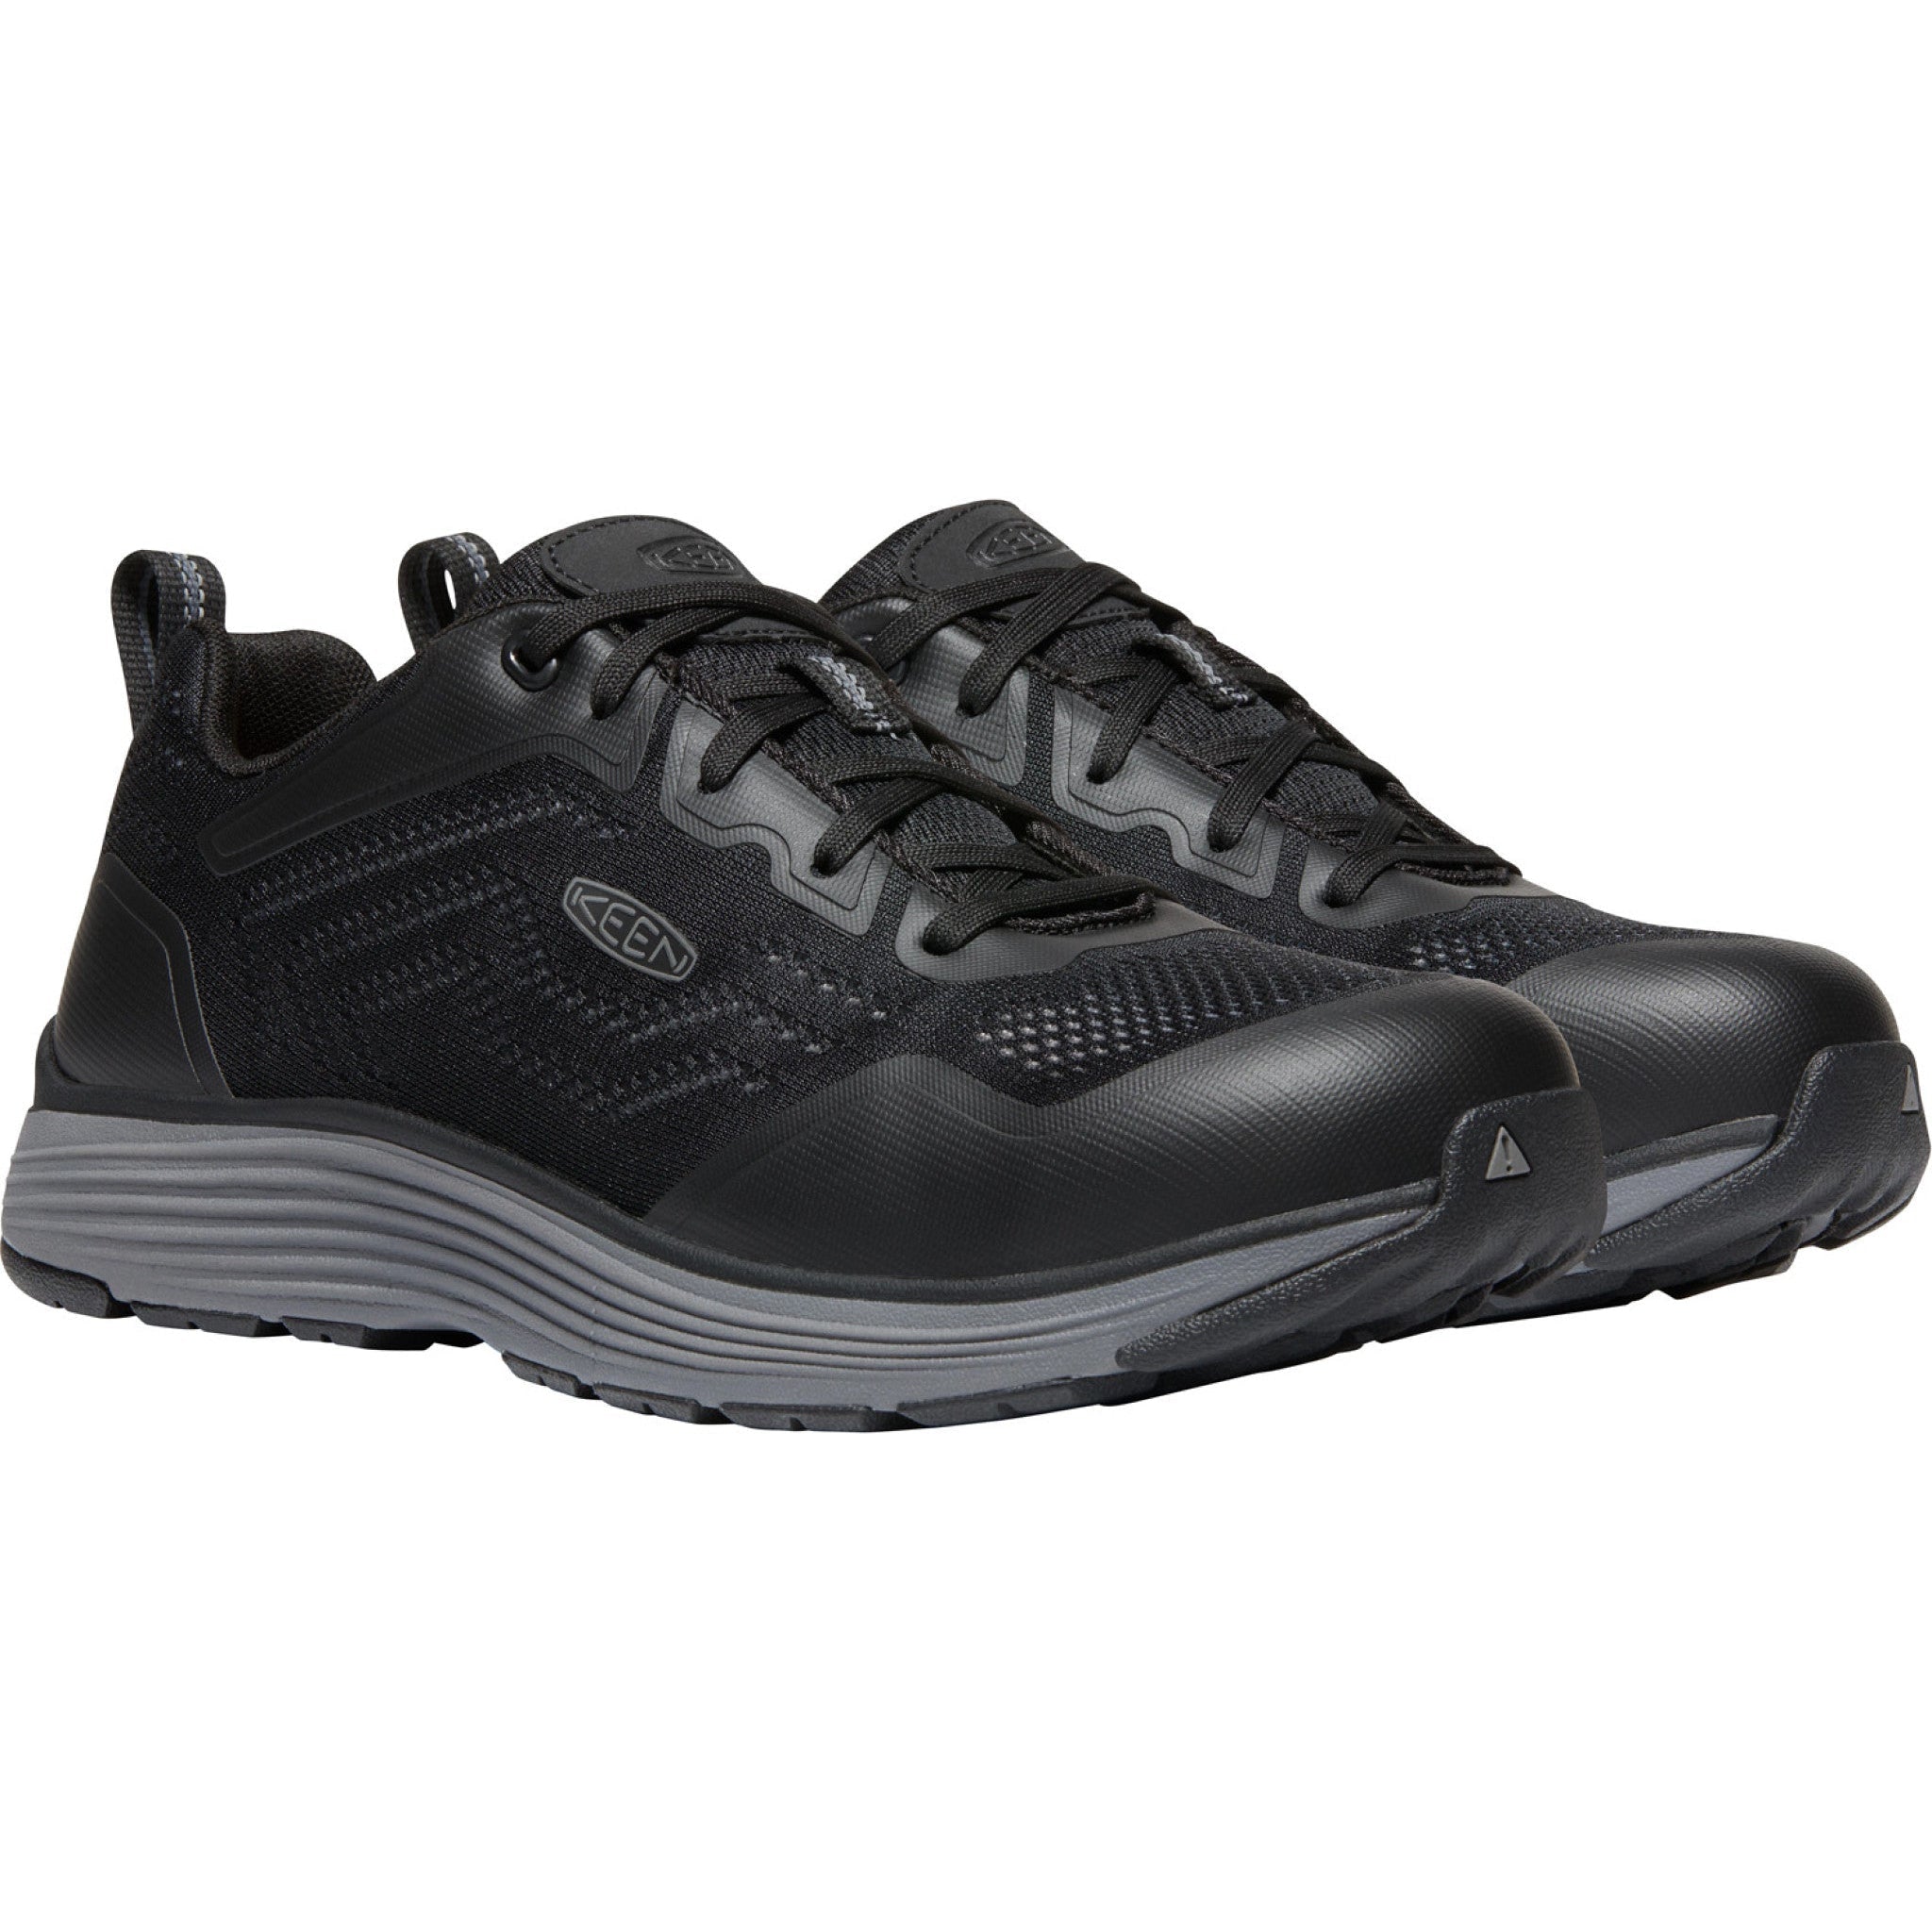 Keen Utility Men's Sparta II Alum Toe Work Shoe - Grey - 1025564 7 / Medium / Grey - Overlook Boots